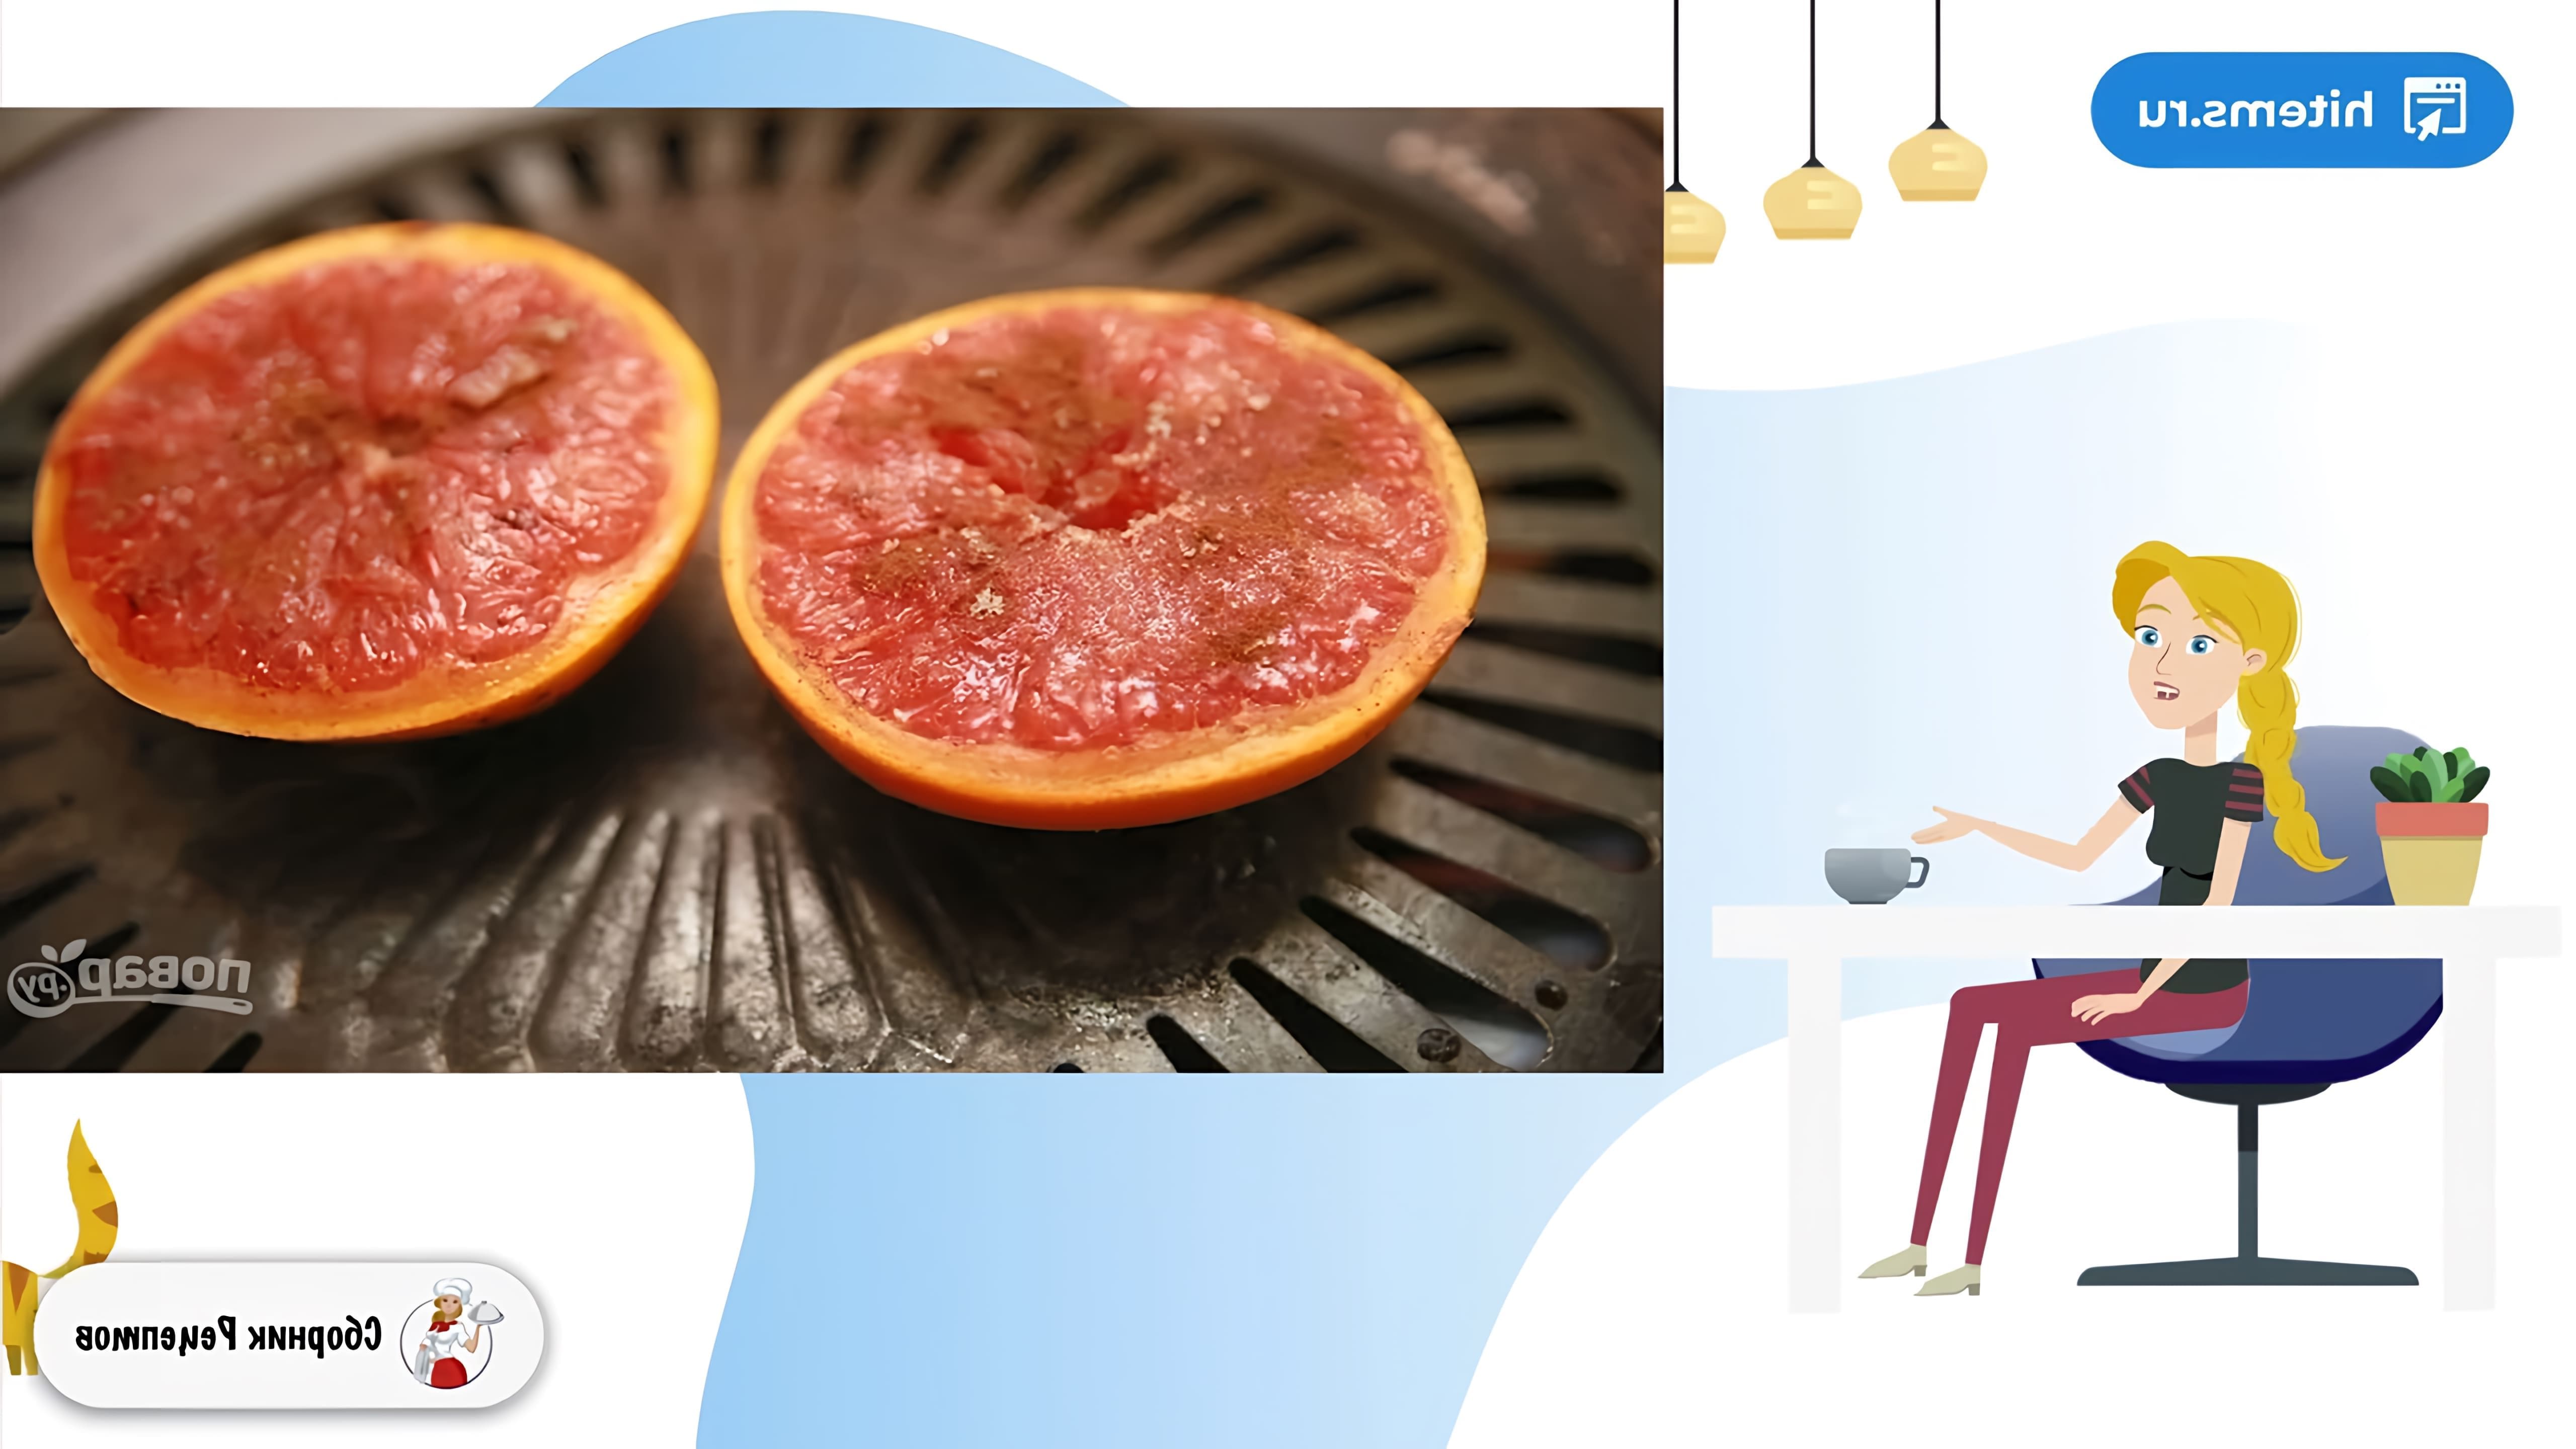 В этом видео демонстрируется рецепт приготовления жареного грейпфрута с корицей